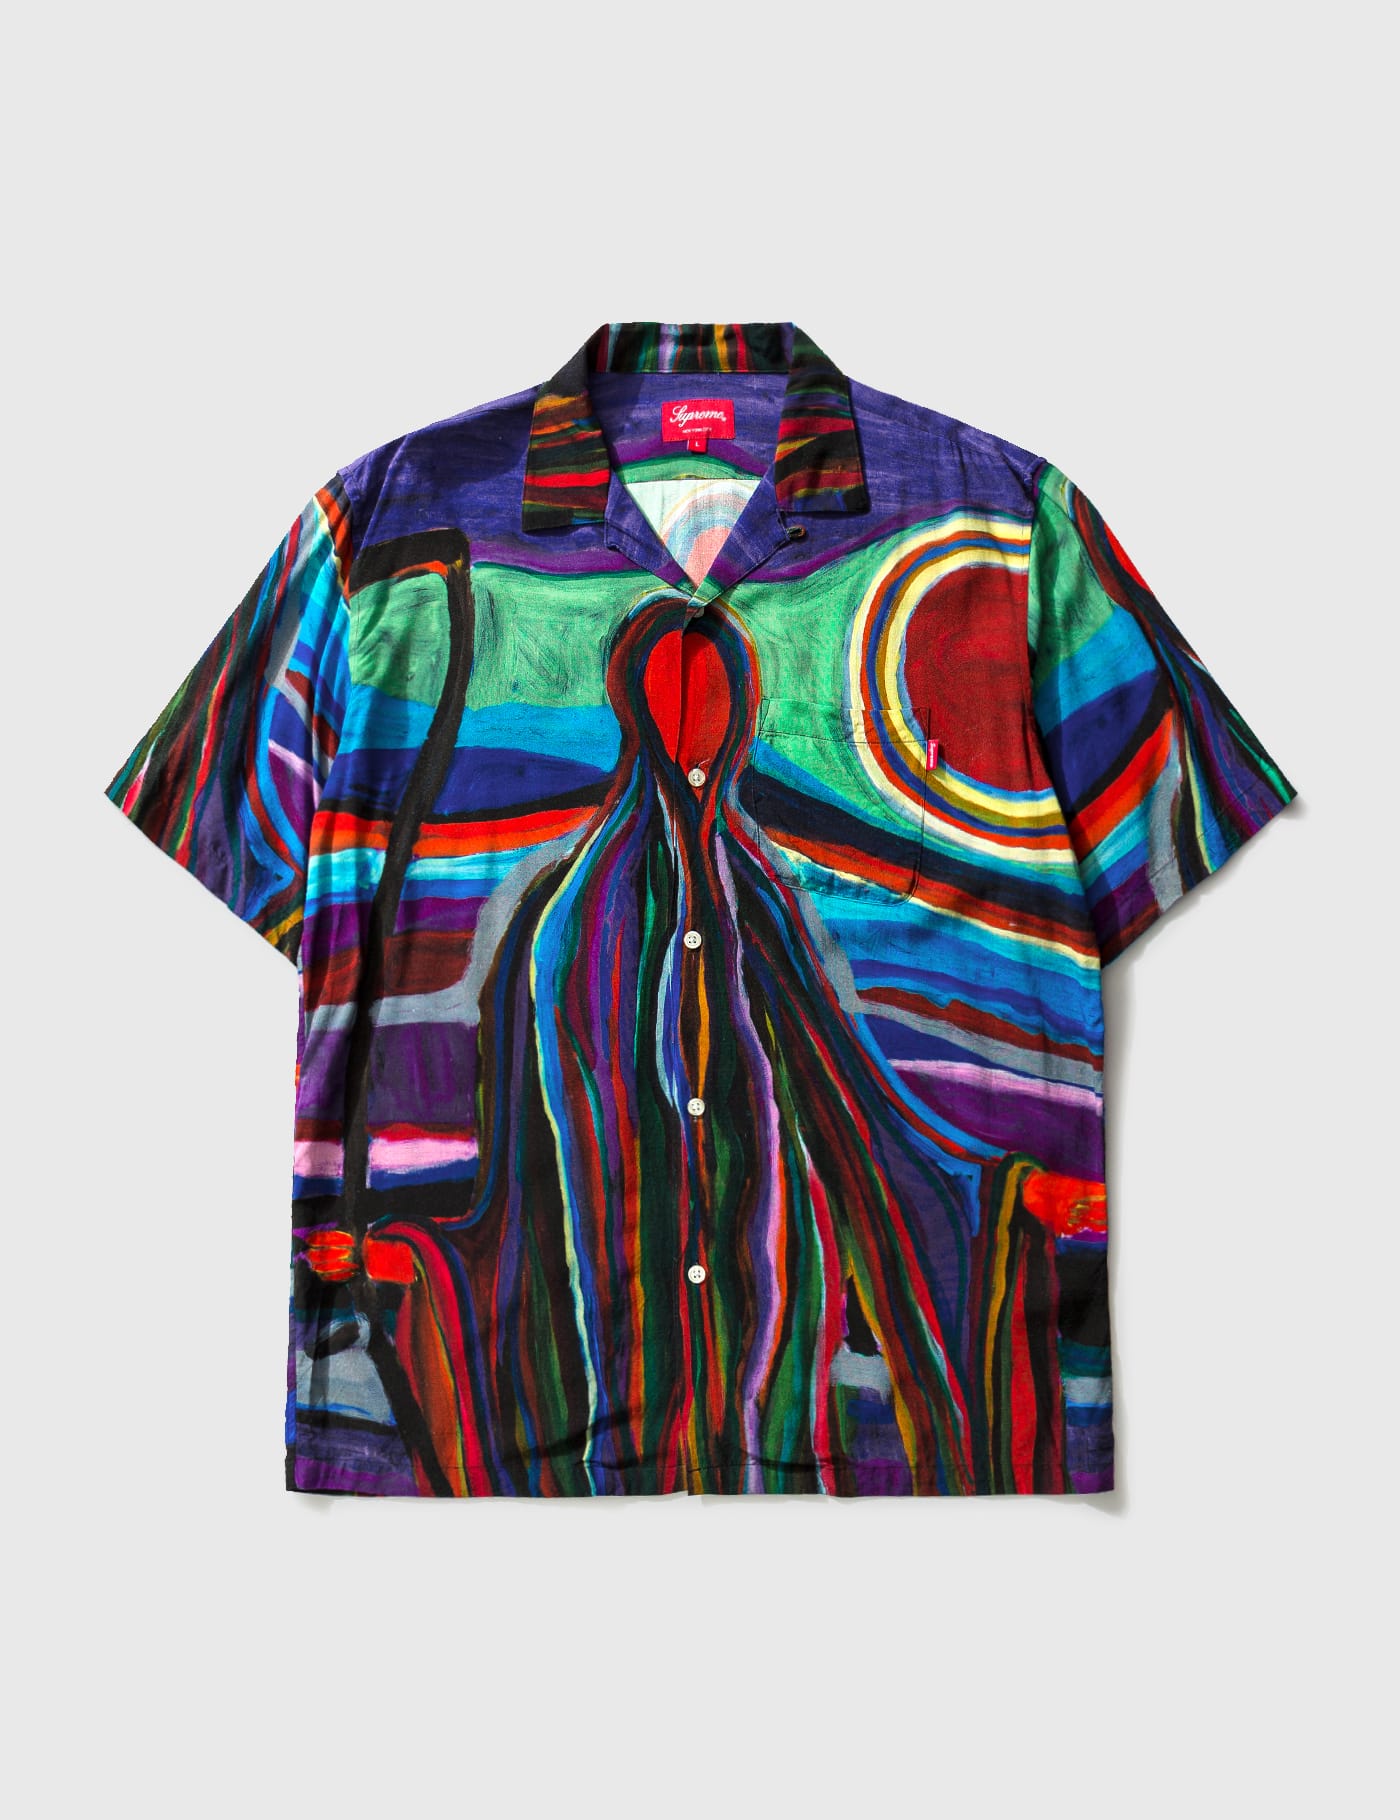 Supreme - Supreme Rayon Printed Shirt | HBX - Globally Curated